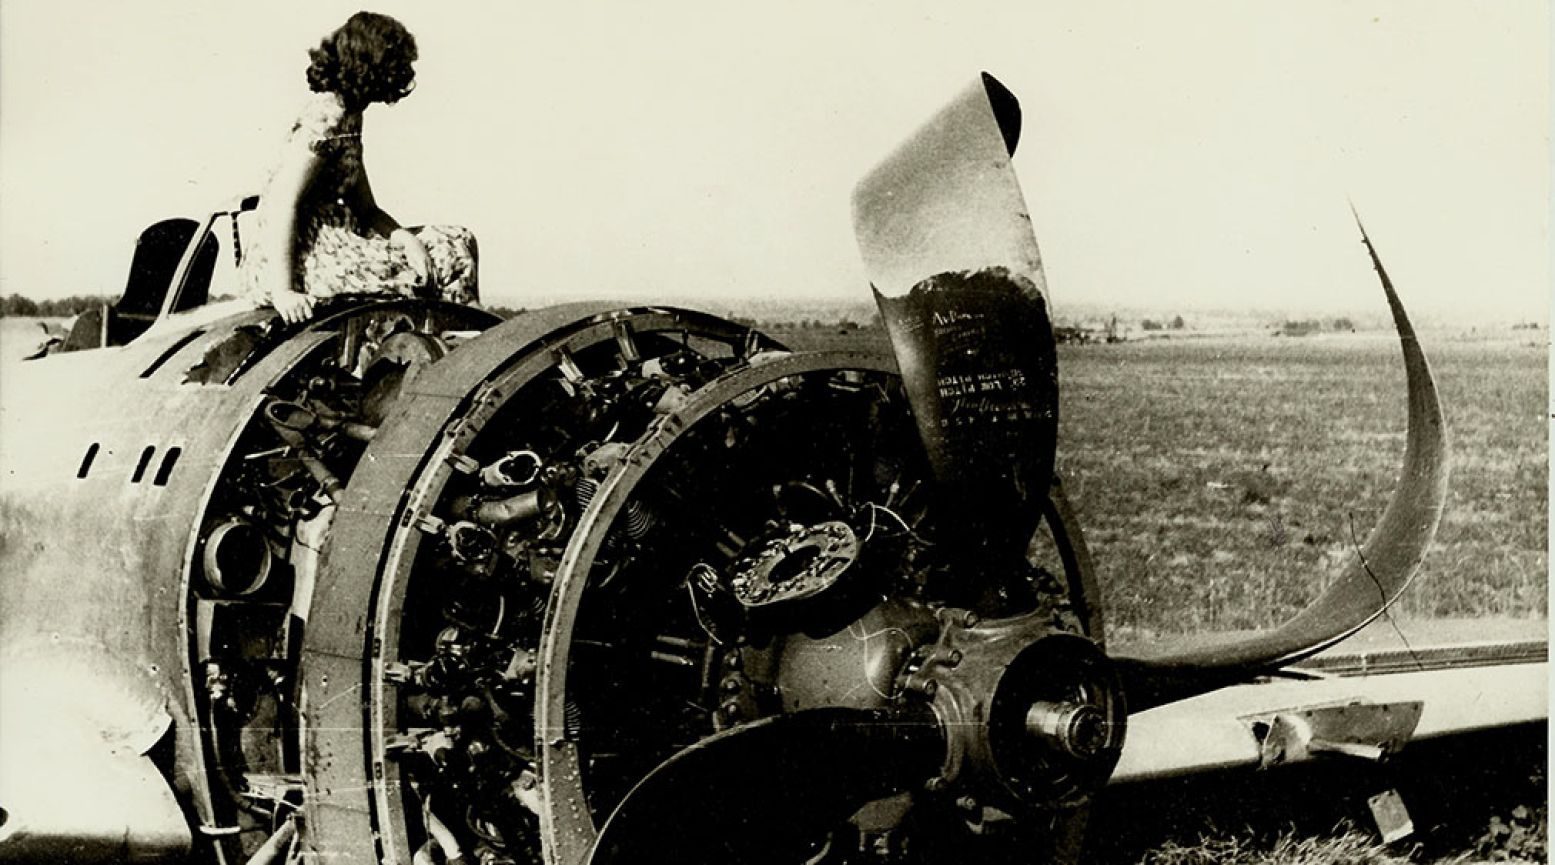 Een jong meisje zit op het wrak van een neergehaald Amerikaans gevechtsvliegtuig in een veld in de omgeving van Groesbeek. Een van de oorlogsbeelden die je tegenkomt in het Infocentrum. Foto: via Nationaal Bevrijdingsmuseum 1944-1945 Groesbeek